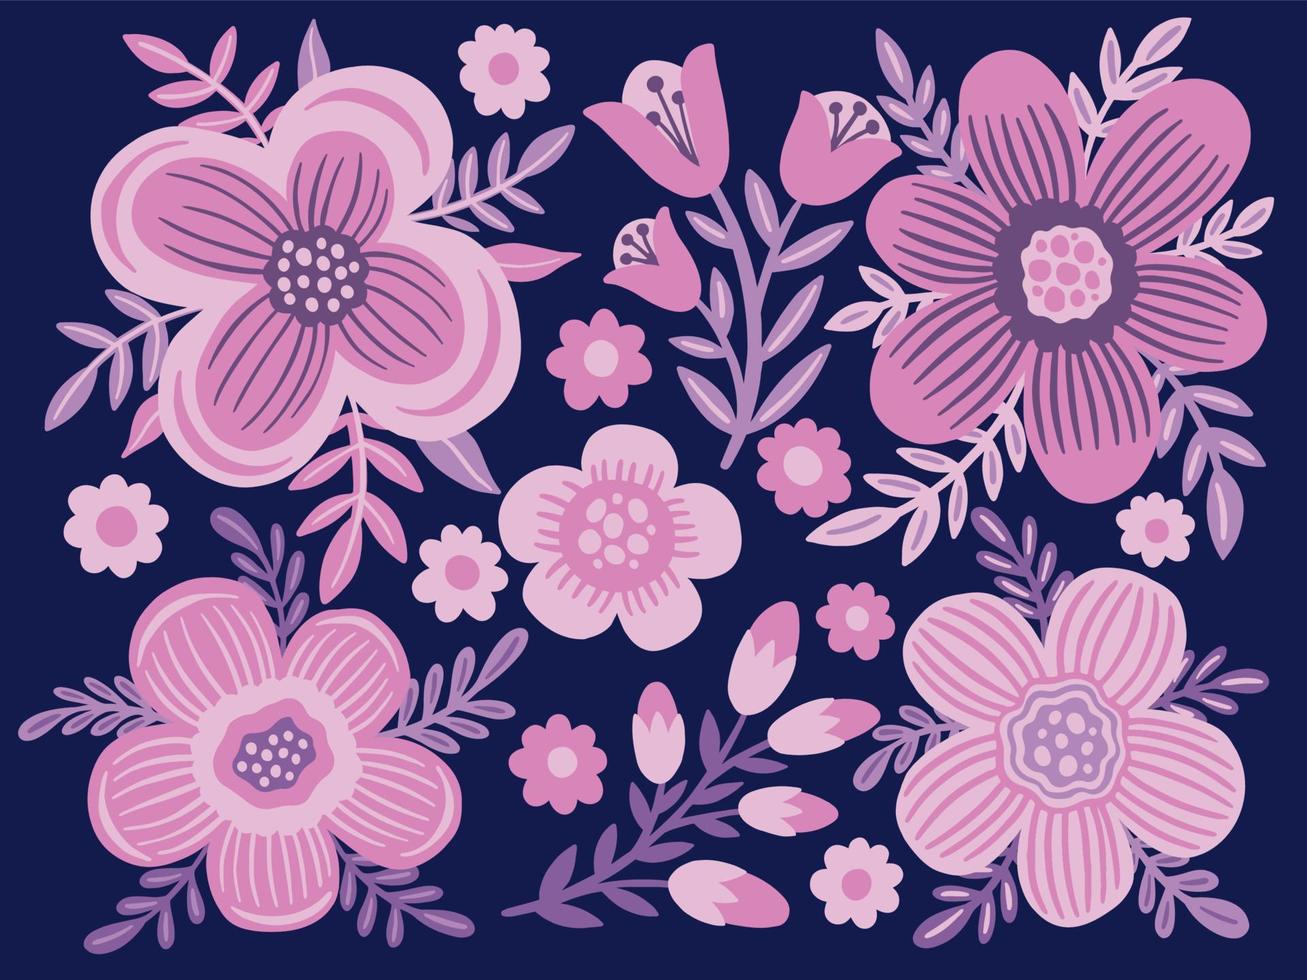 Stellen Sie elegante rosa süße Blume ein. dekoratives Zeichnungsdesign floral. romantische Sammlung isoliert. vektor